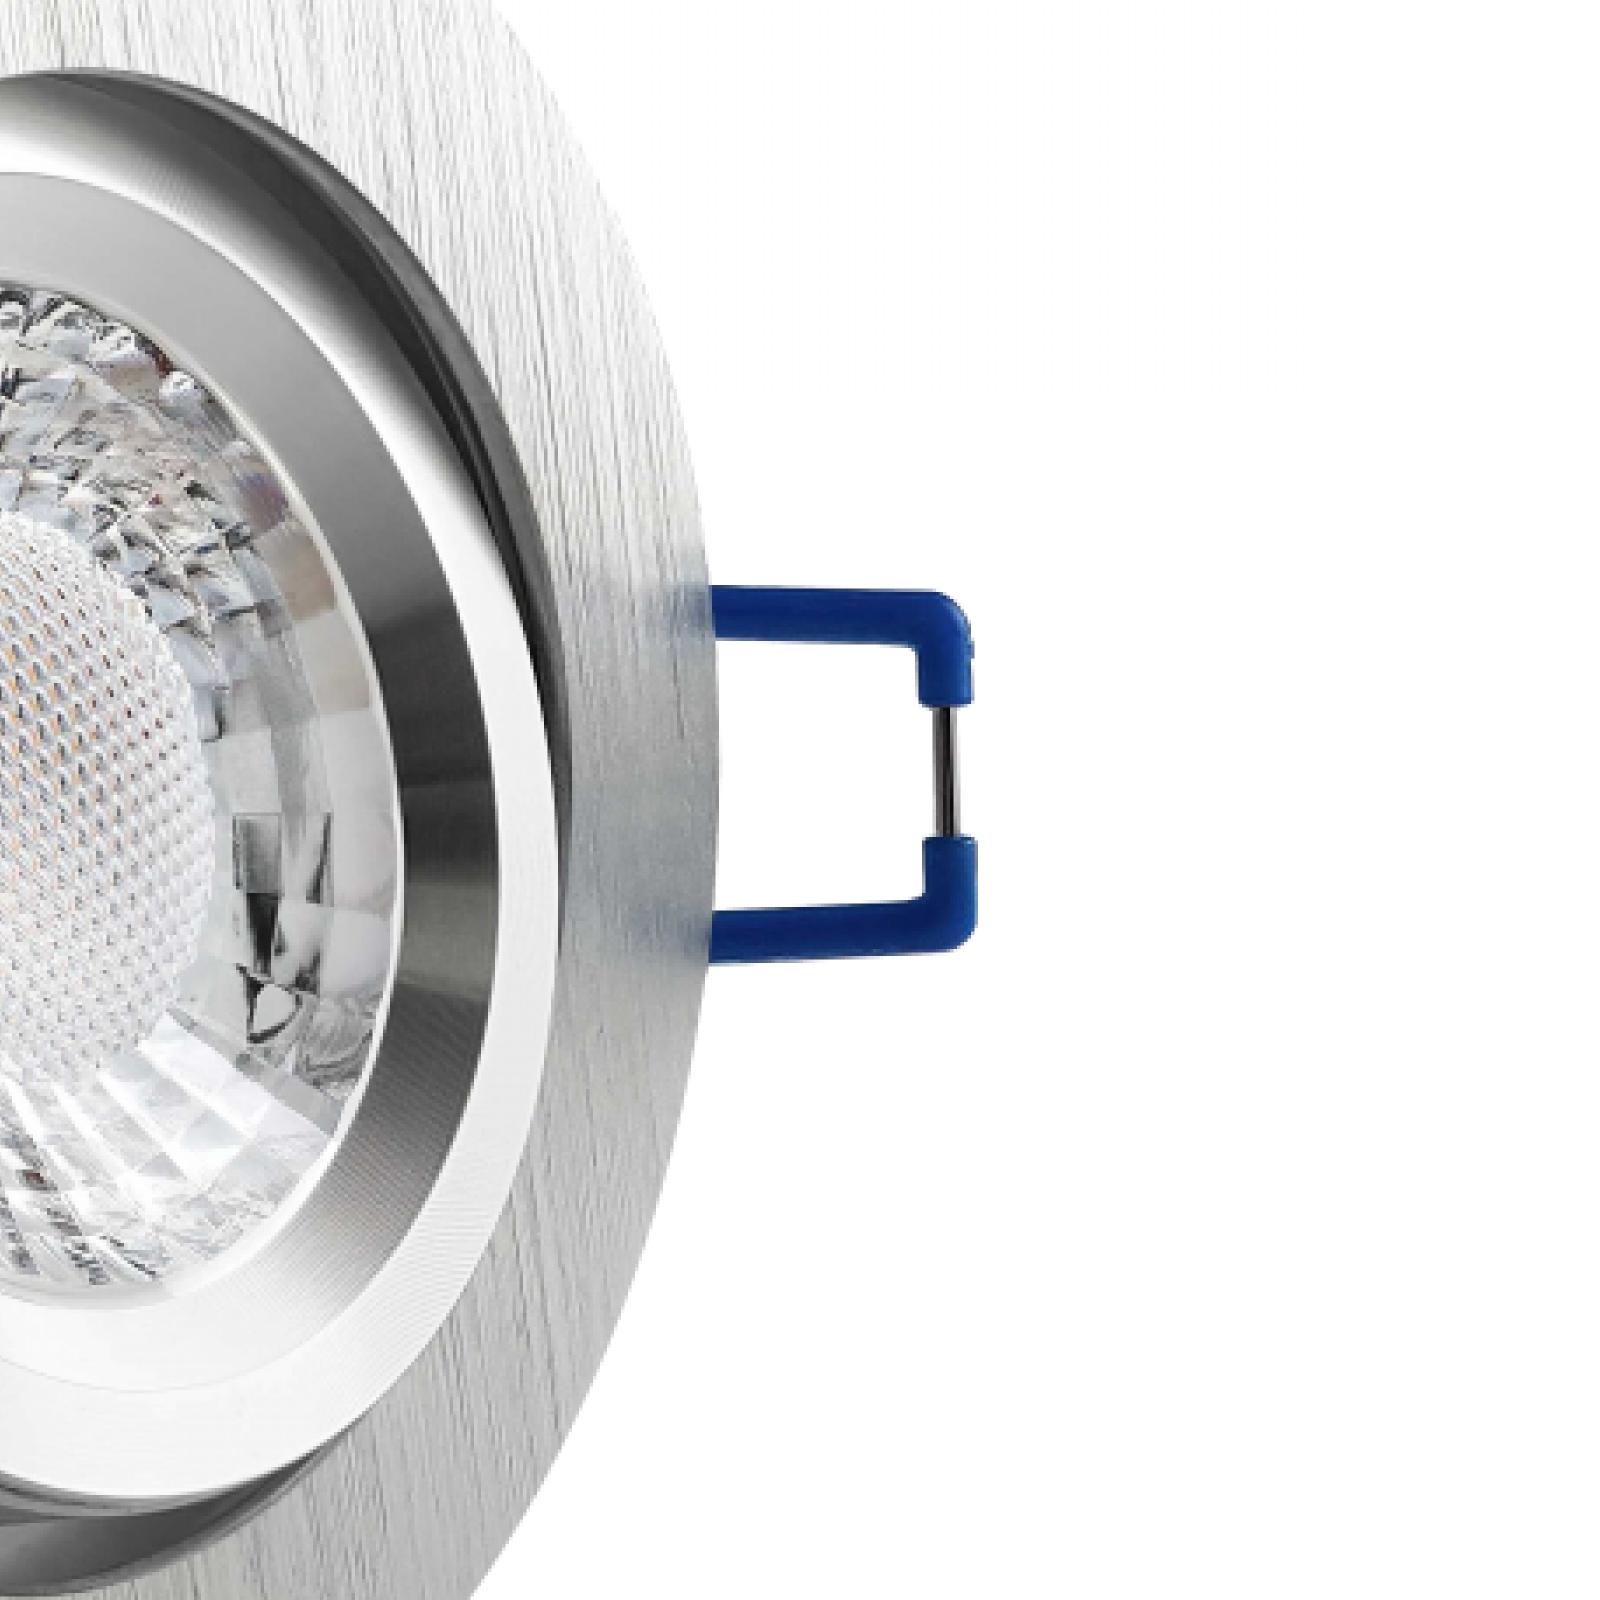 LED Einbaustrahler Aluminium geschliffen | Runder Einbauspot | 360° schwenkbar | Lochmaß Ø 68mm - 75mm | geringe Einbautiefe 27mm | Anschlussfertig 